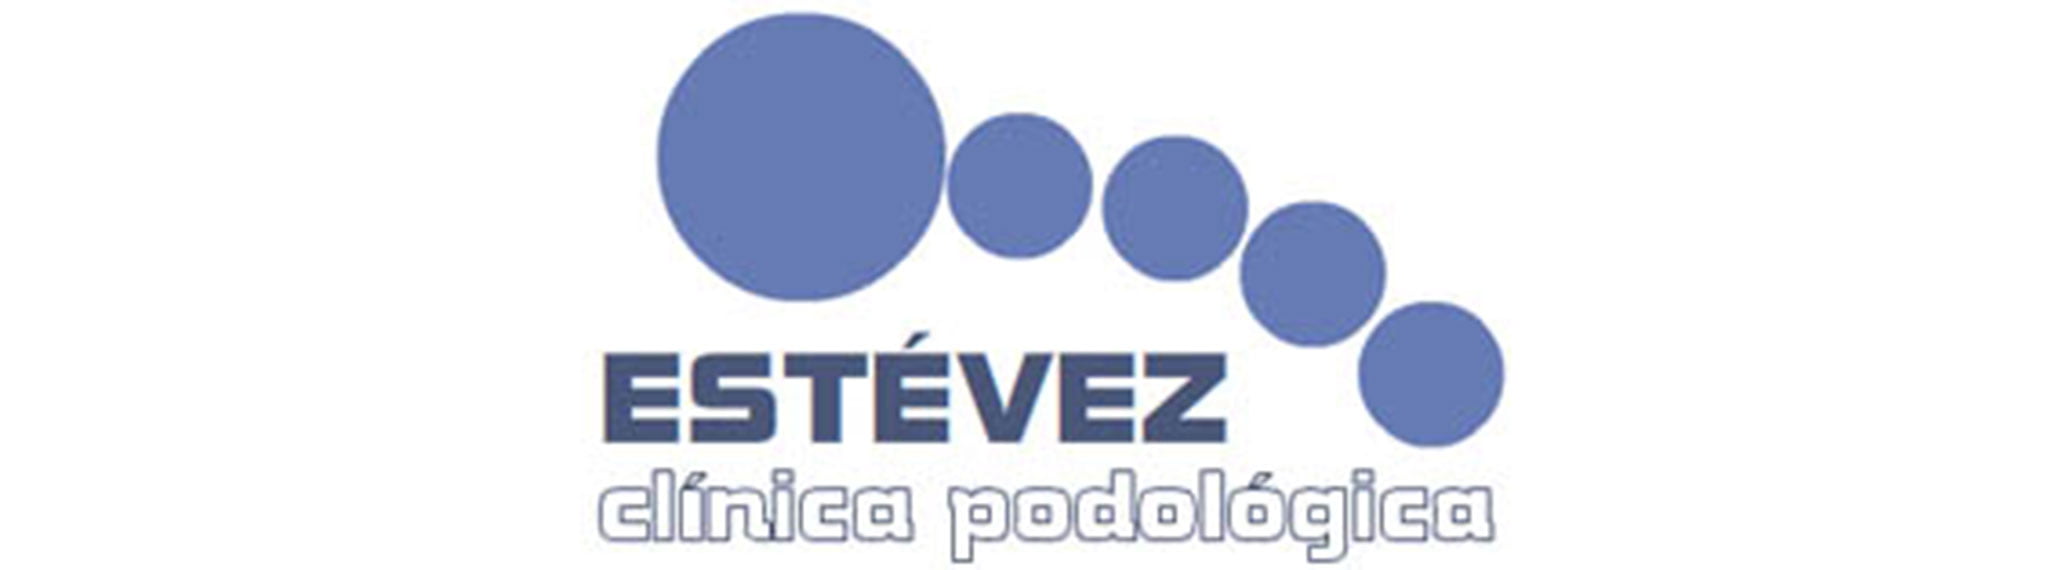 Logotipo de Clínica Podológica Estévez